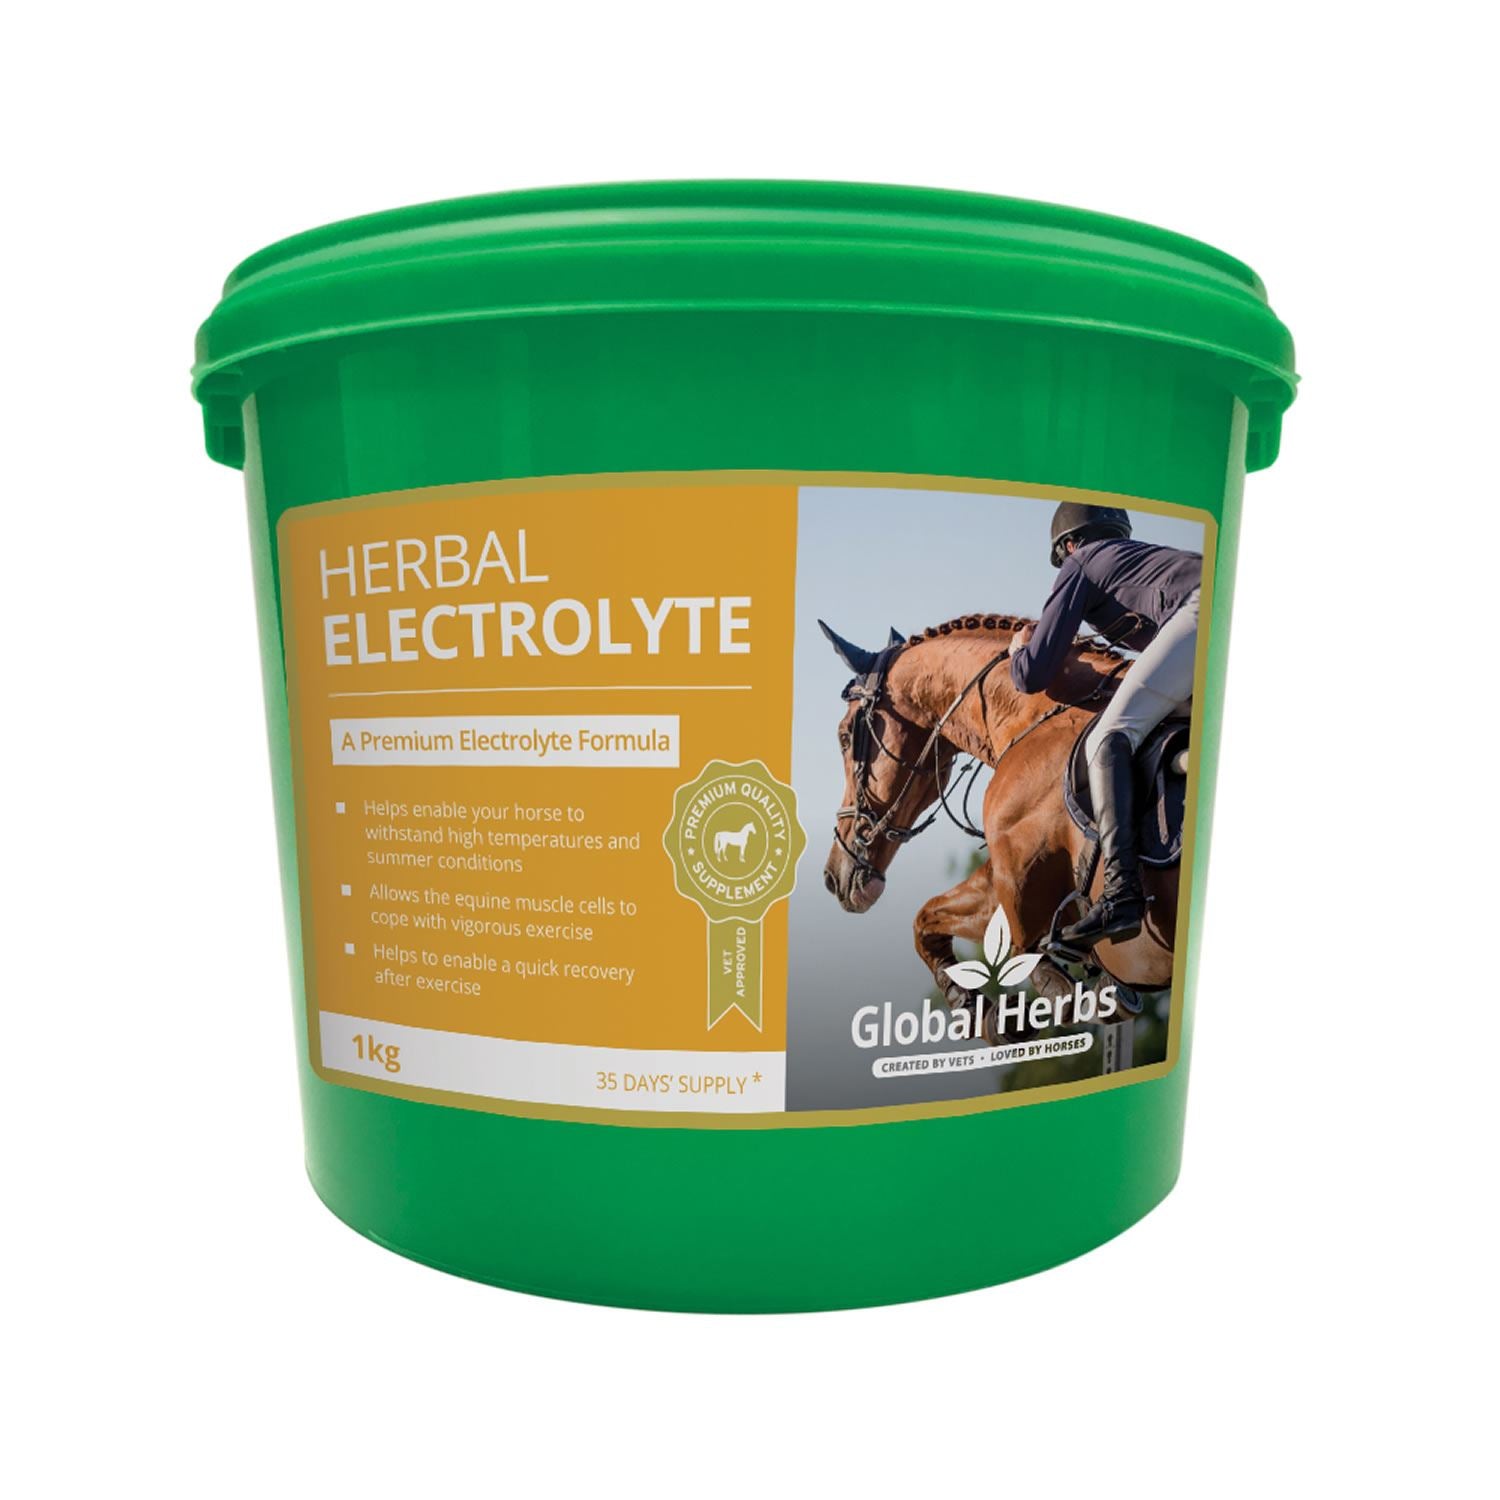 Global Herbs Herbal Electrolyte - Just Horse Riders